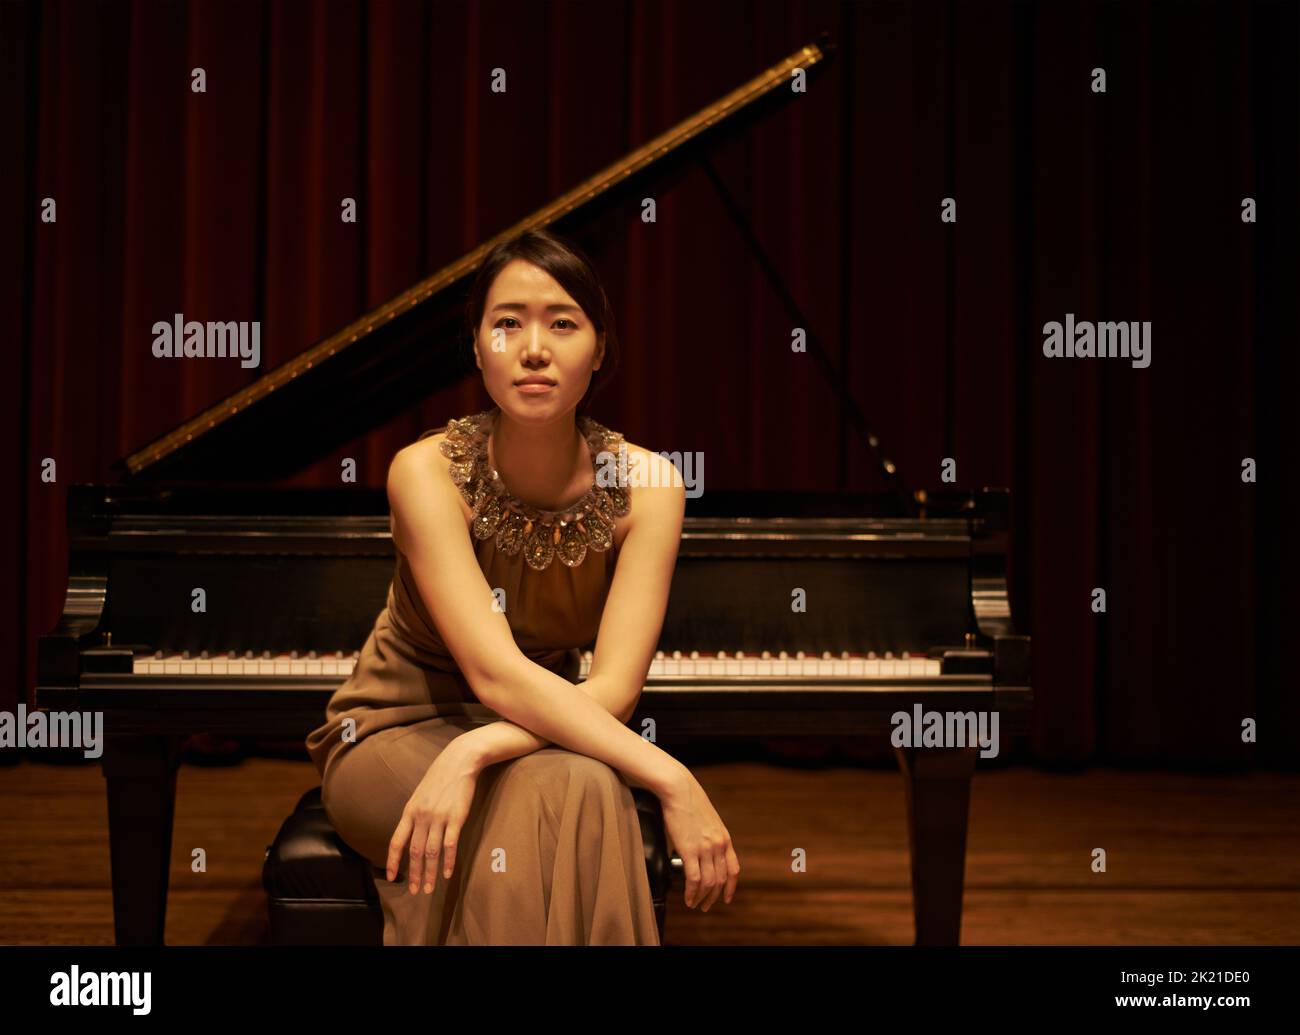 Shes bekam das Selbstvertrauen zu spielen. Eine junge Frau, die am Ende eines musikalischen Konzerts an ihrem Klavier saß. Stockfoto